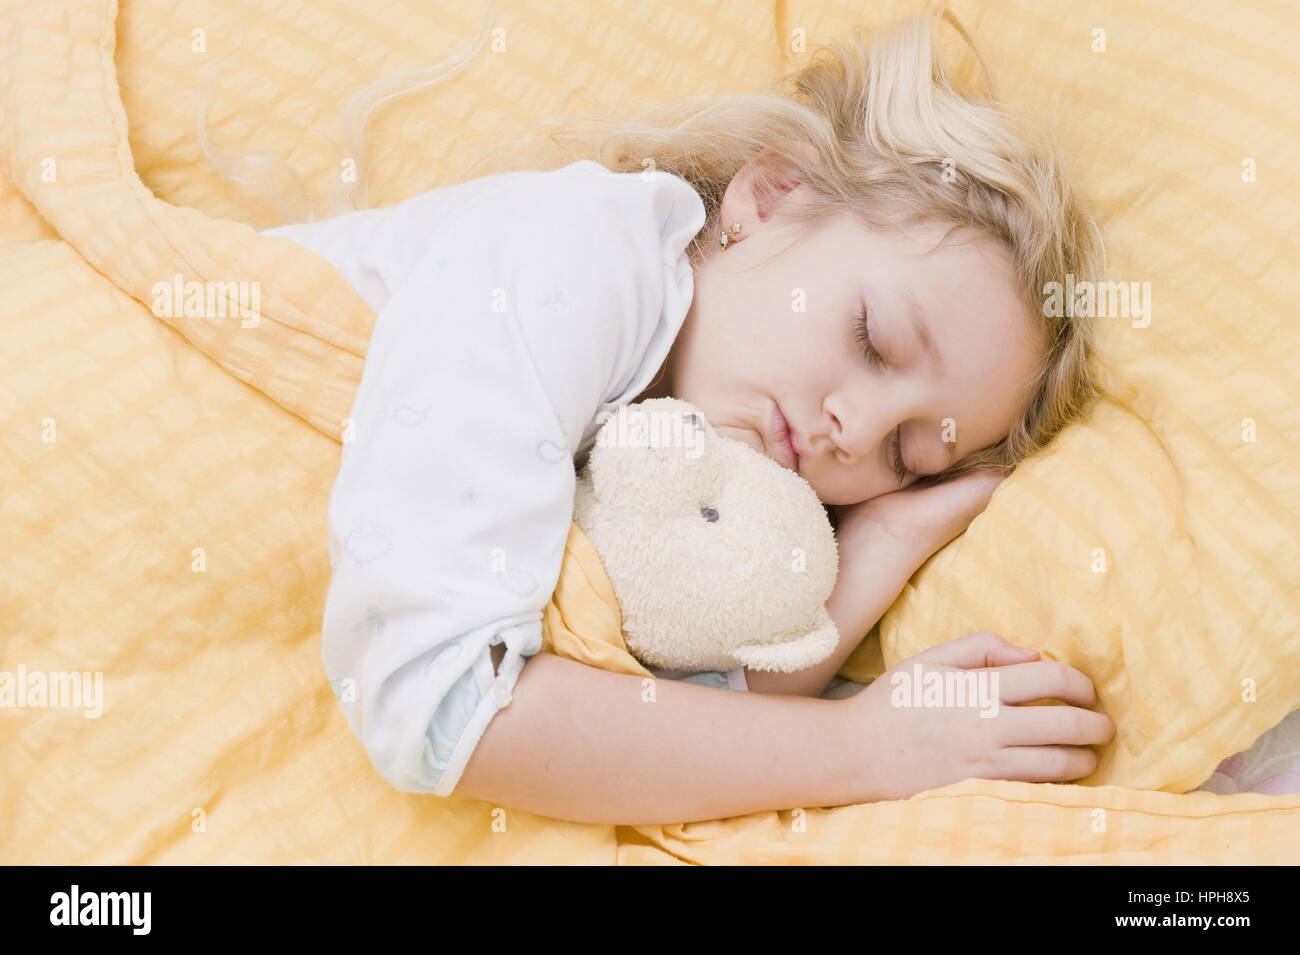 Maedchen liegt im Bett und schlaeft - girl sleeping, Model released Stock Photo